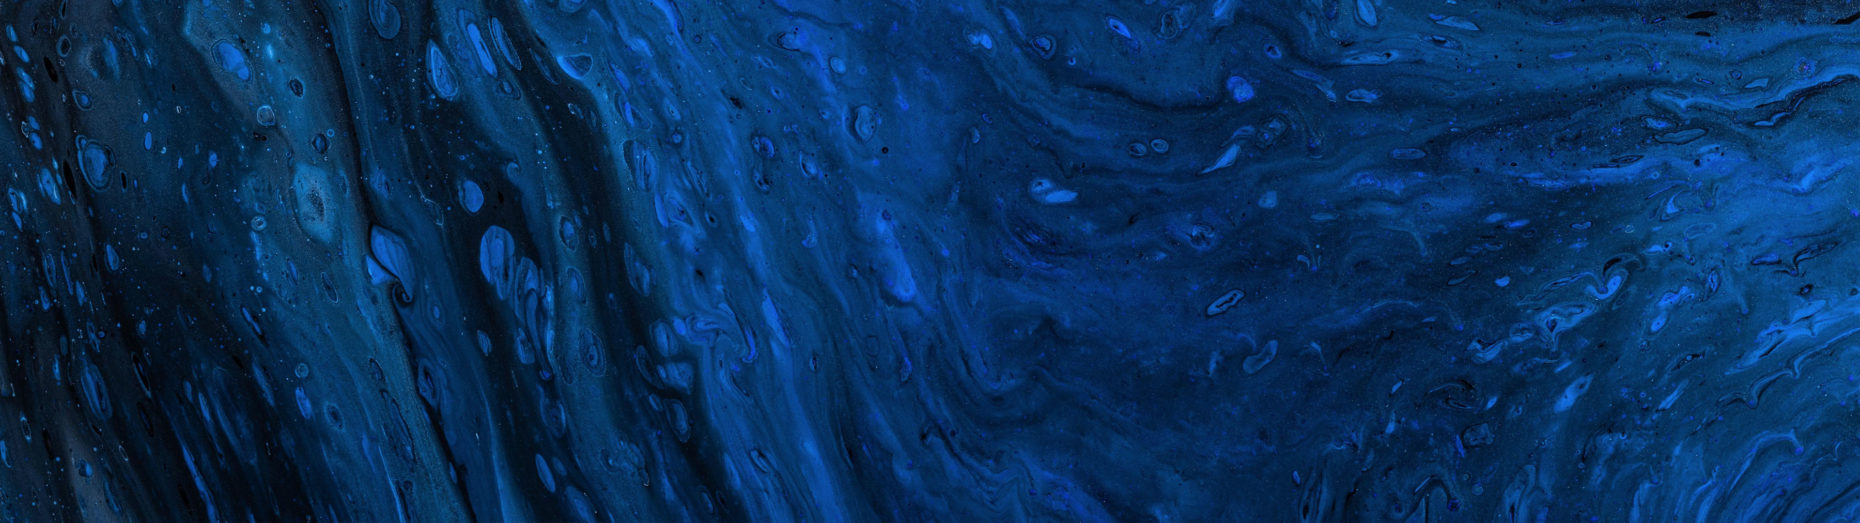 Deep Blue: Hãy cùng ngắm nhìn những bức tranh nghệ thuật với gam màu Deep Blue quyến rũ. Màu xanh biển sâu lấp lánh sẽ mang lại cho bạn cảm giác yên bình, thư thái. Đắm mình trong thế giới đầy ma mị này và cảm nhận những điều kỳ diệu đang chờ đợi.